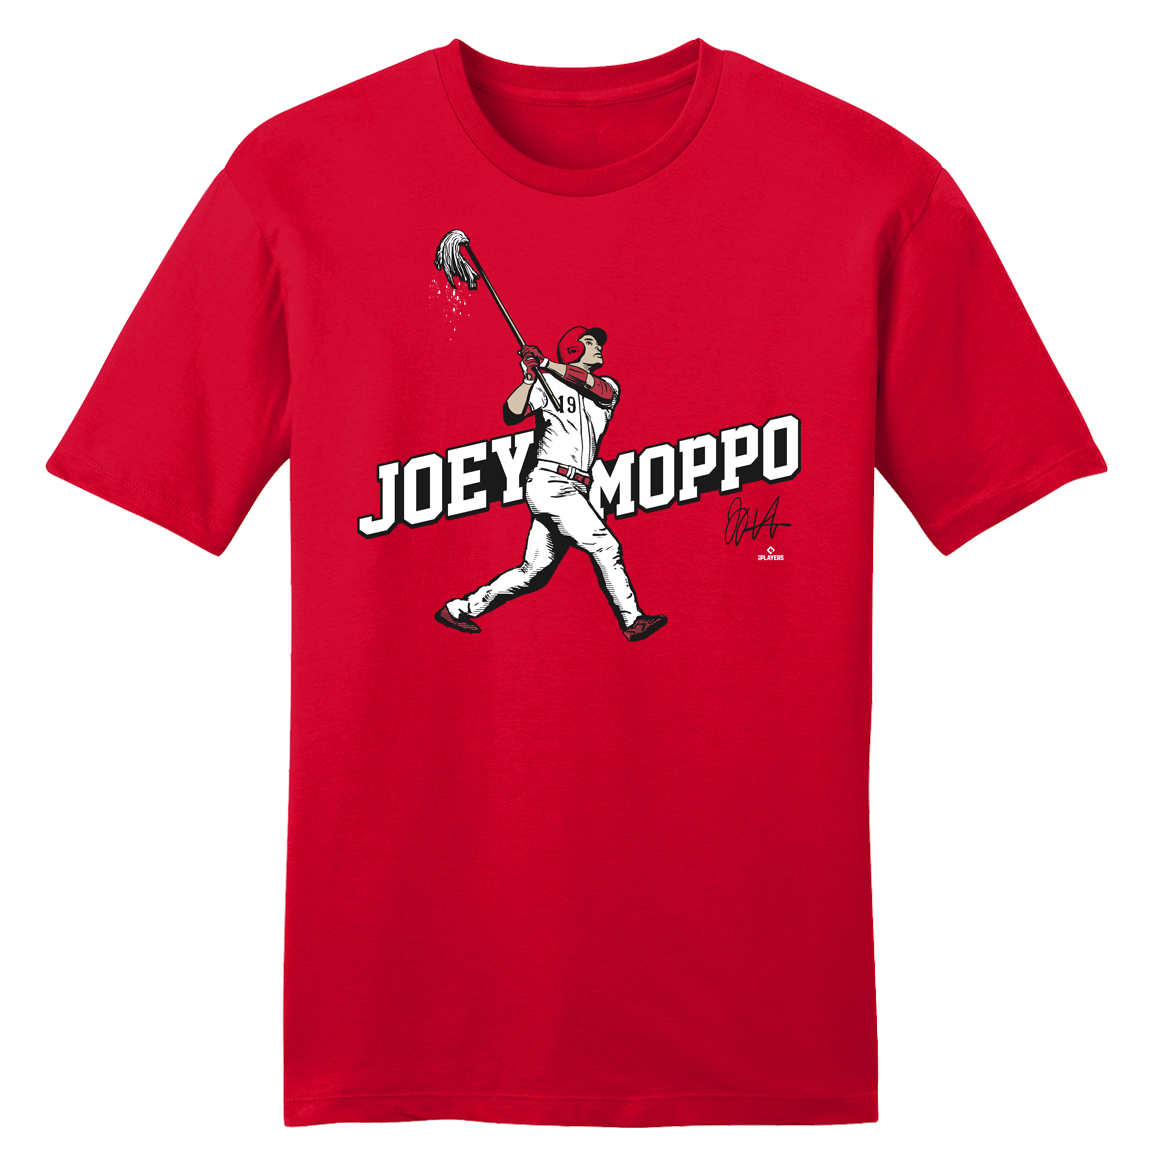 "Joey Moppo" Tee